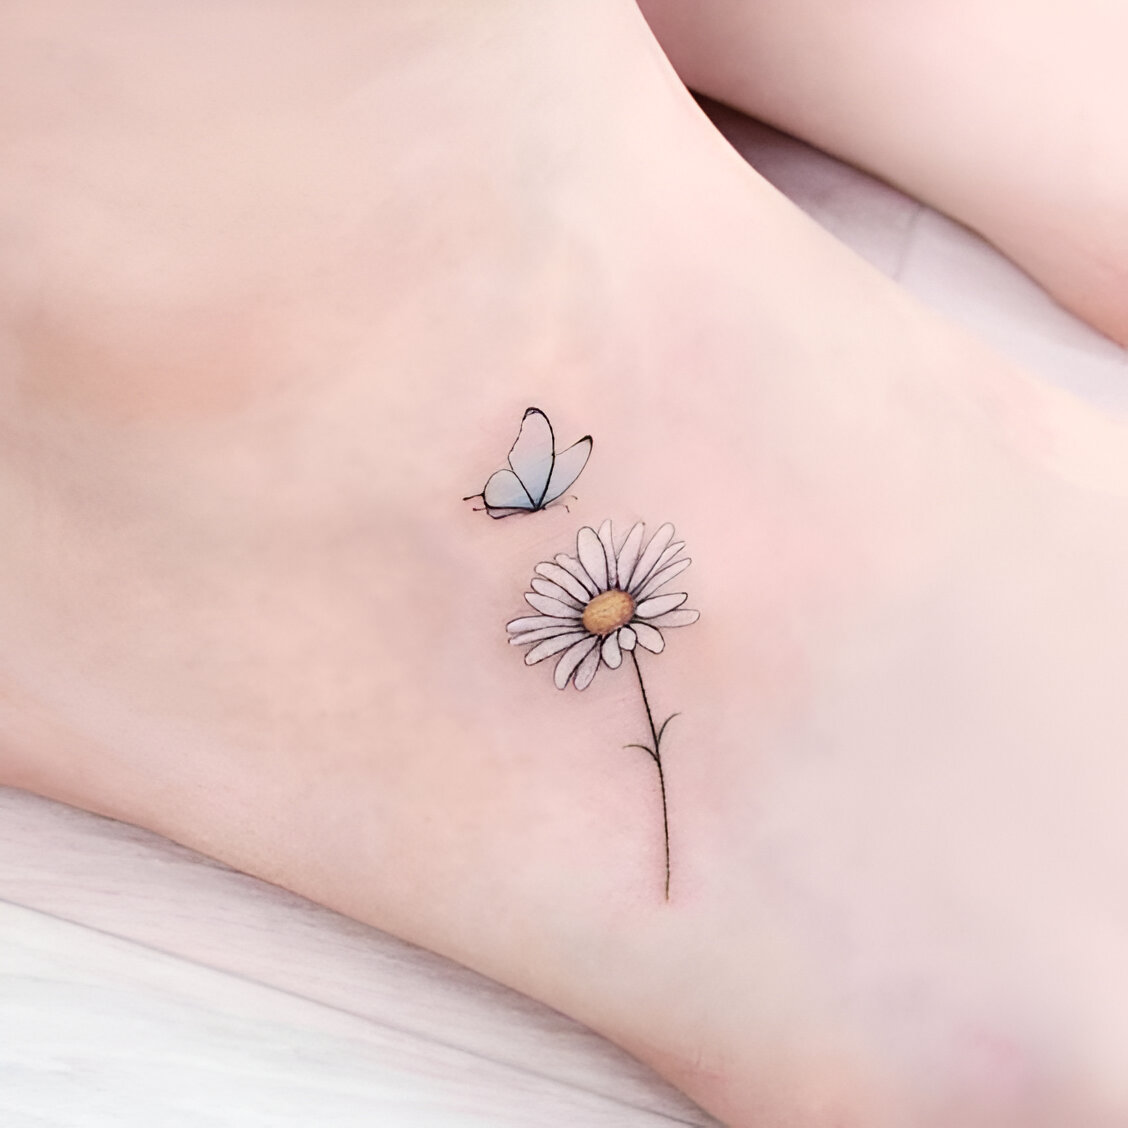 Mini Daisy Tattoos